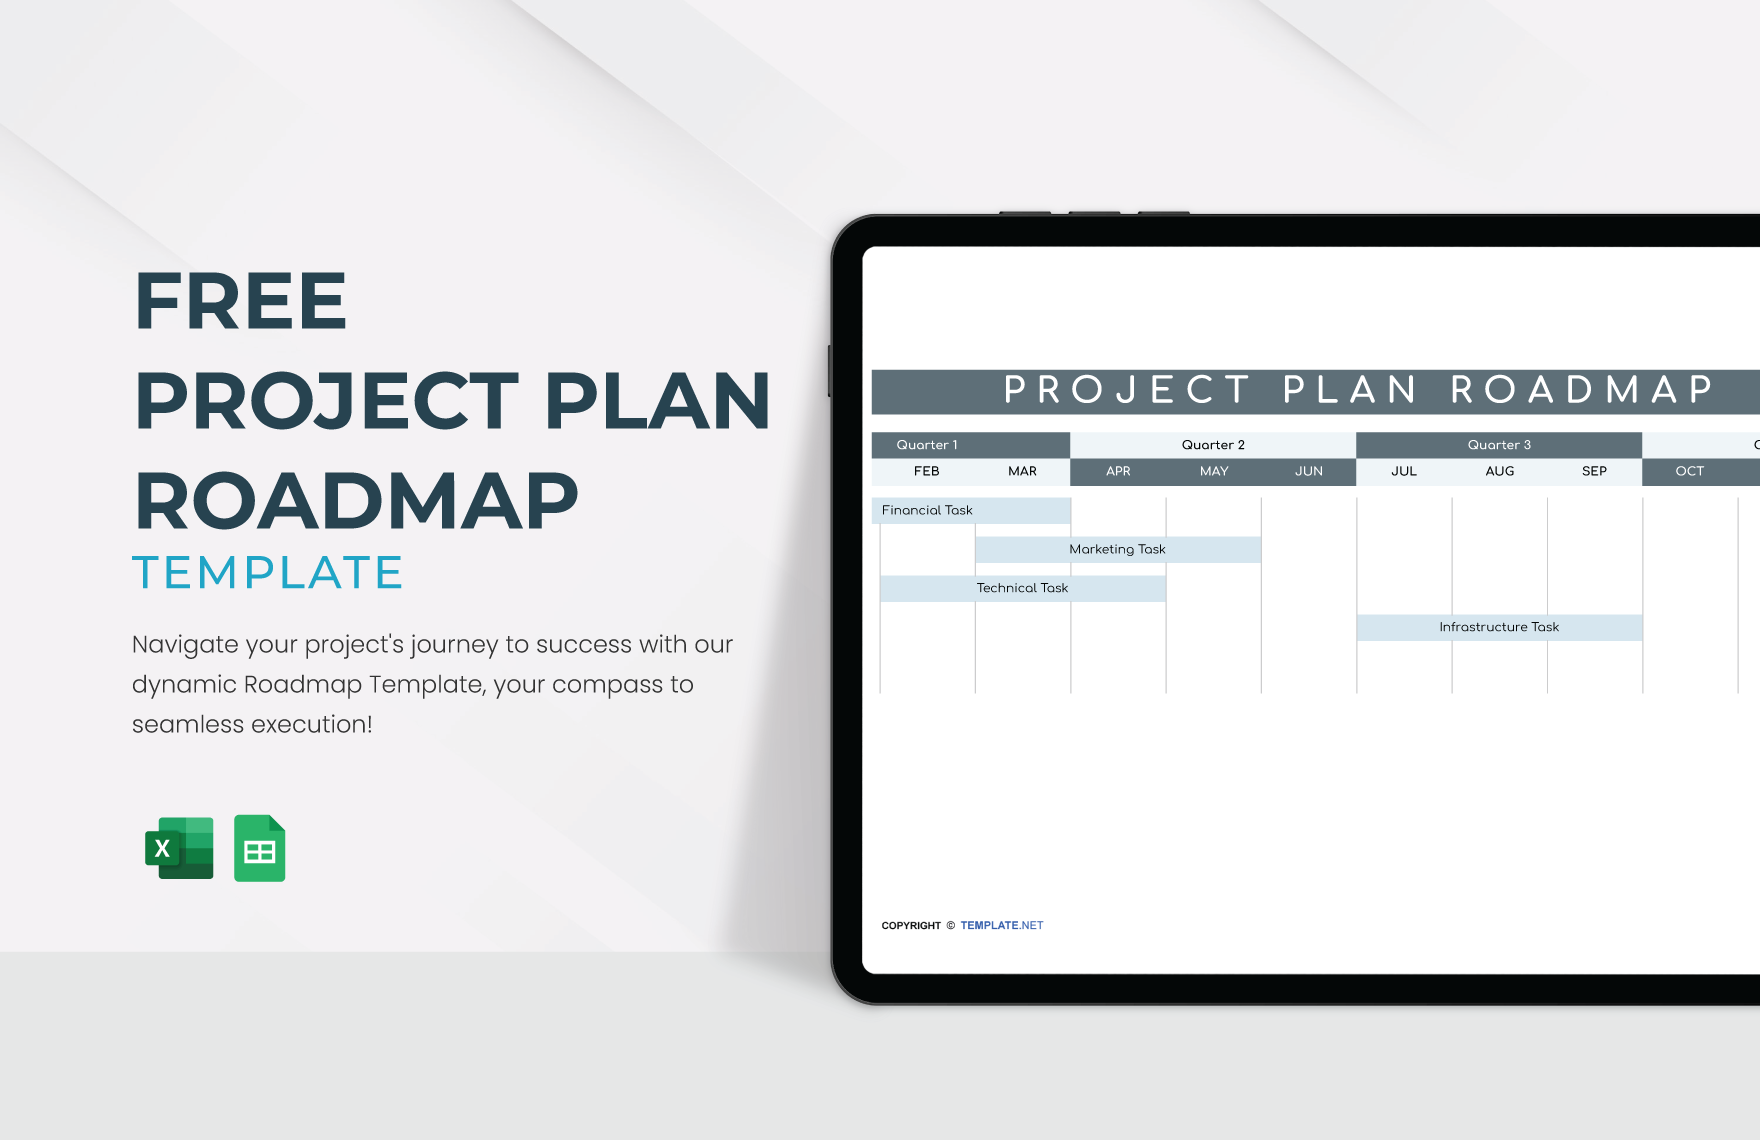 Project Plan Roadmap Template